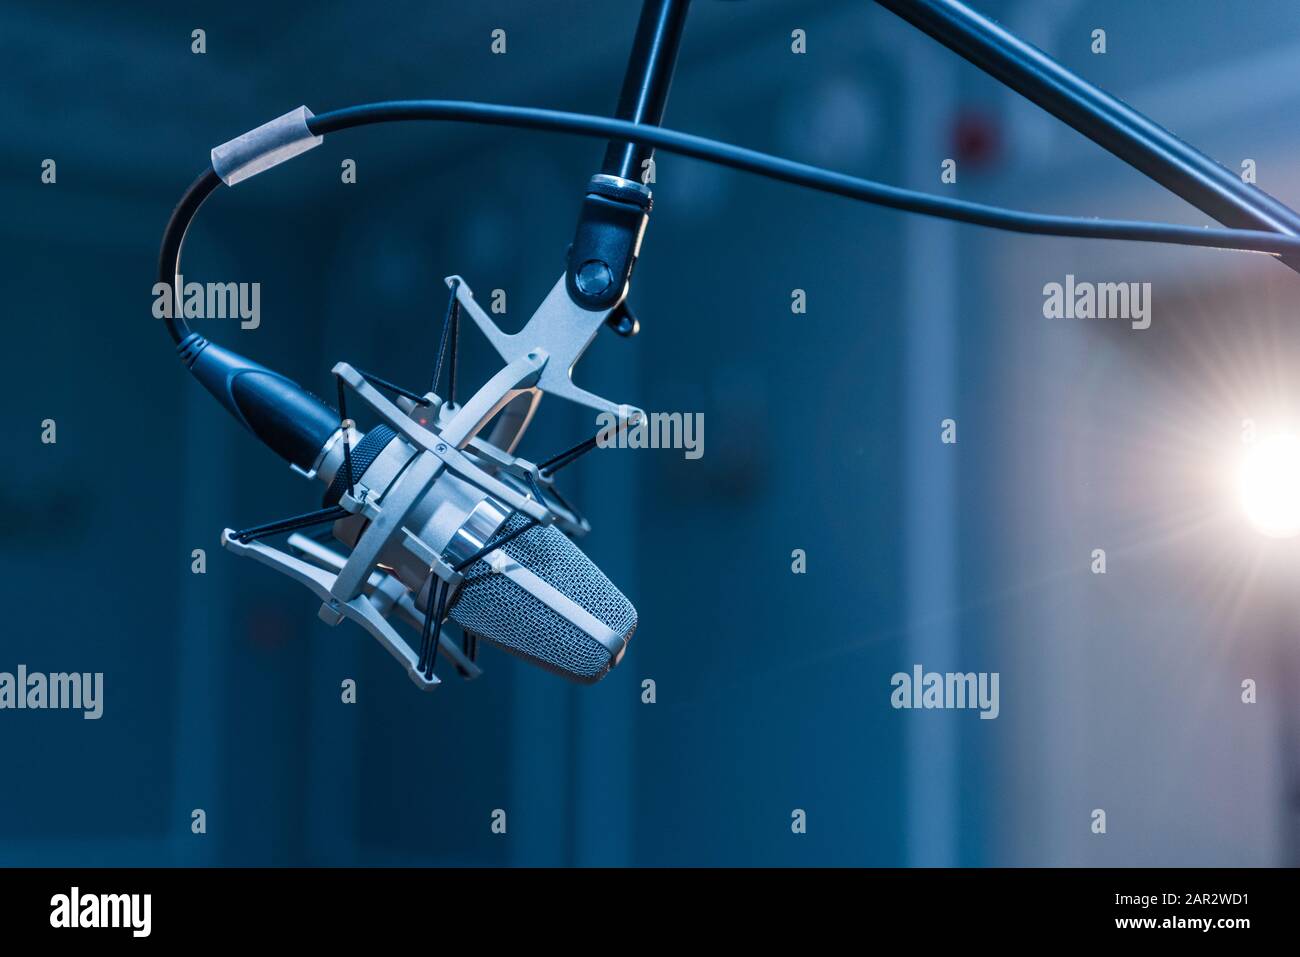 Ein professionelles silbernes Kondensatormikrofon, das auf einem schwarzen Stativ montiert ist und in einem Konzertsaal mit Punktbeleuchtung aufgestellt ist. Stockfoto